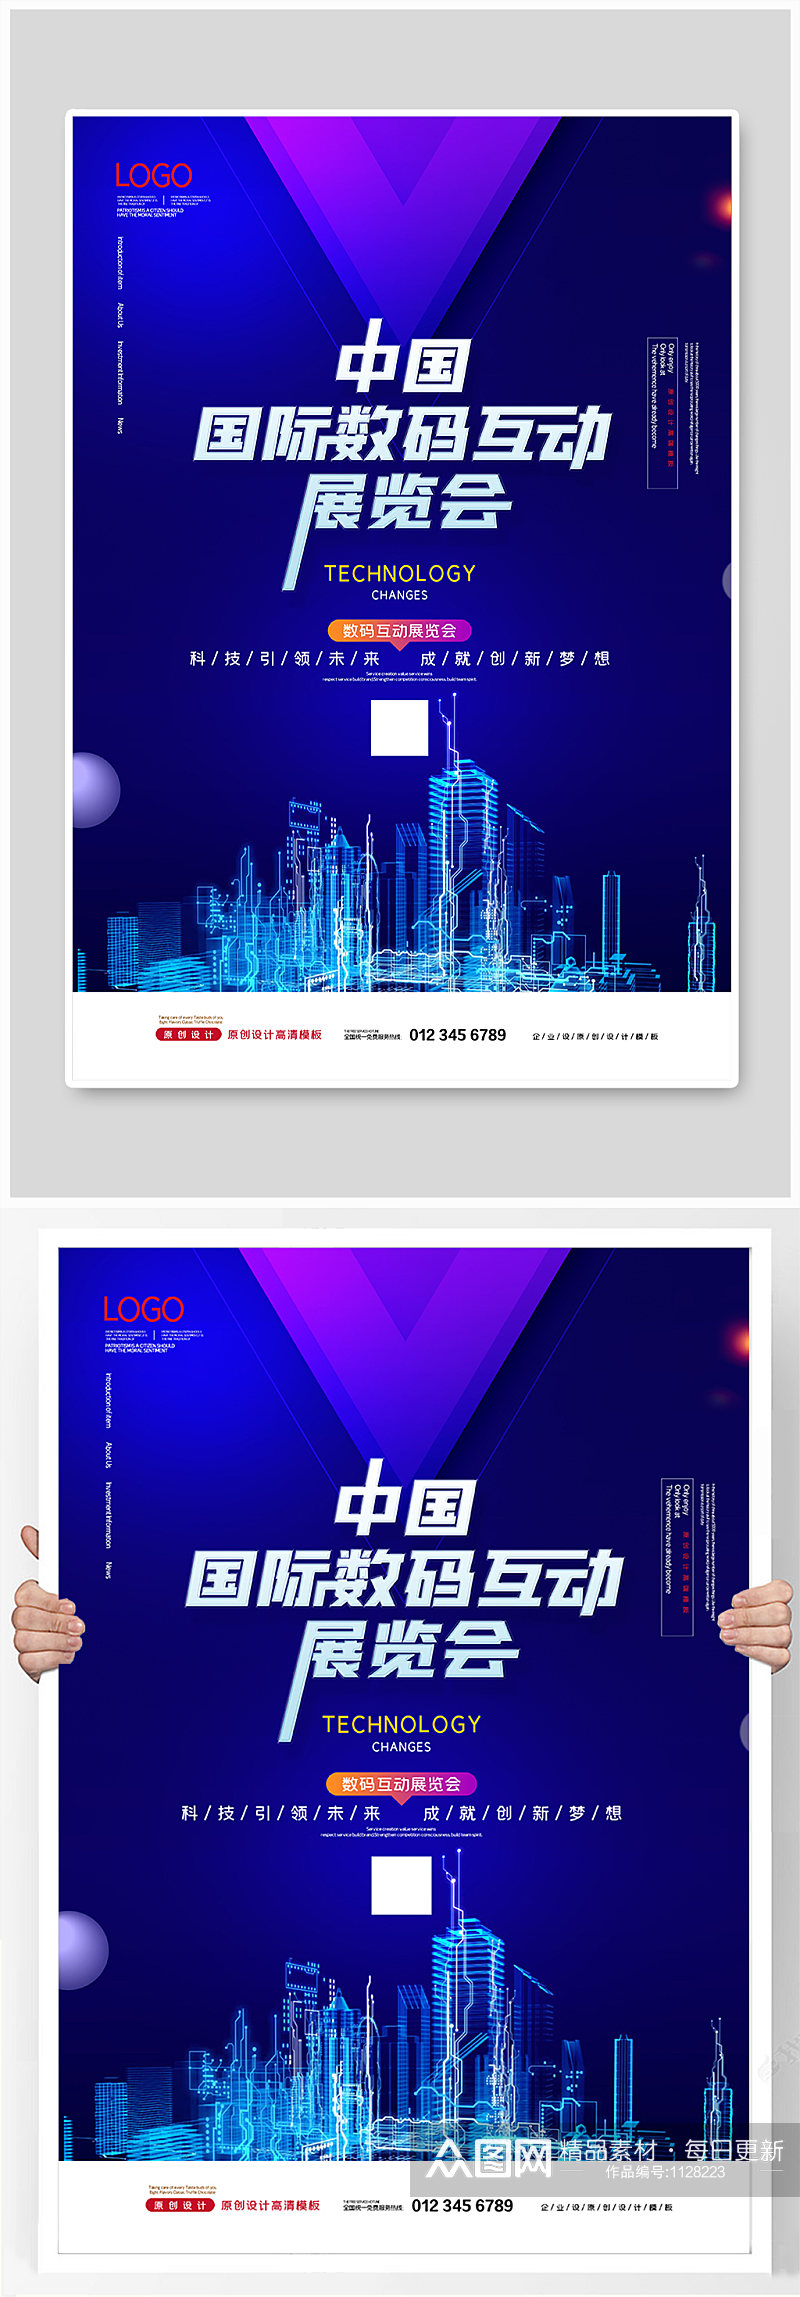 2021简约中国国际数码互动展览会海报素材